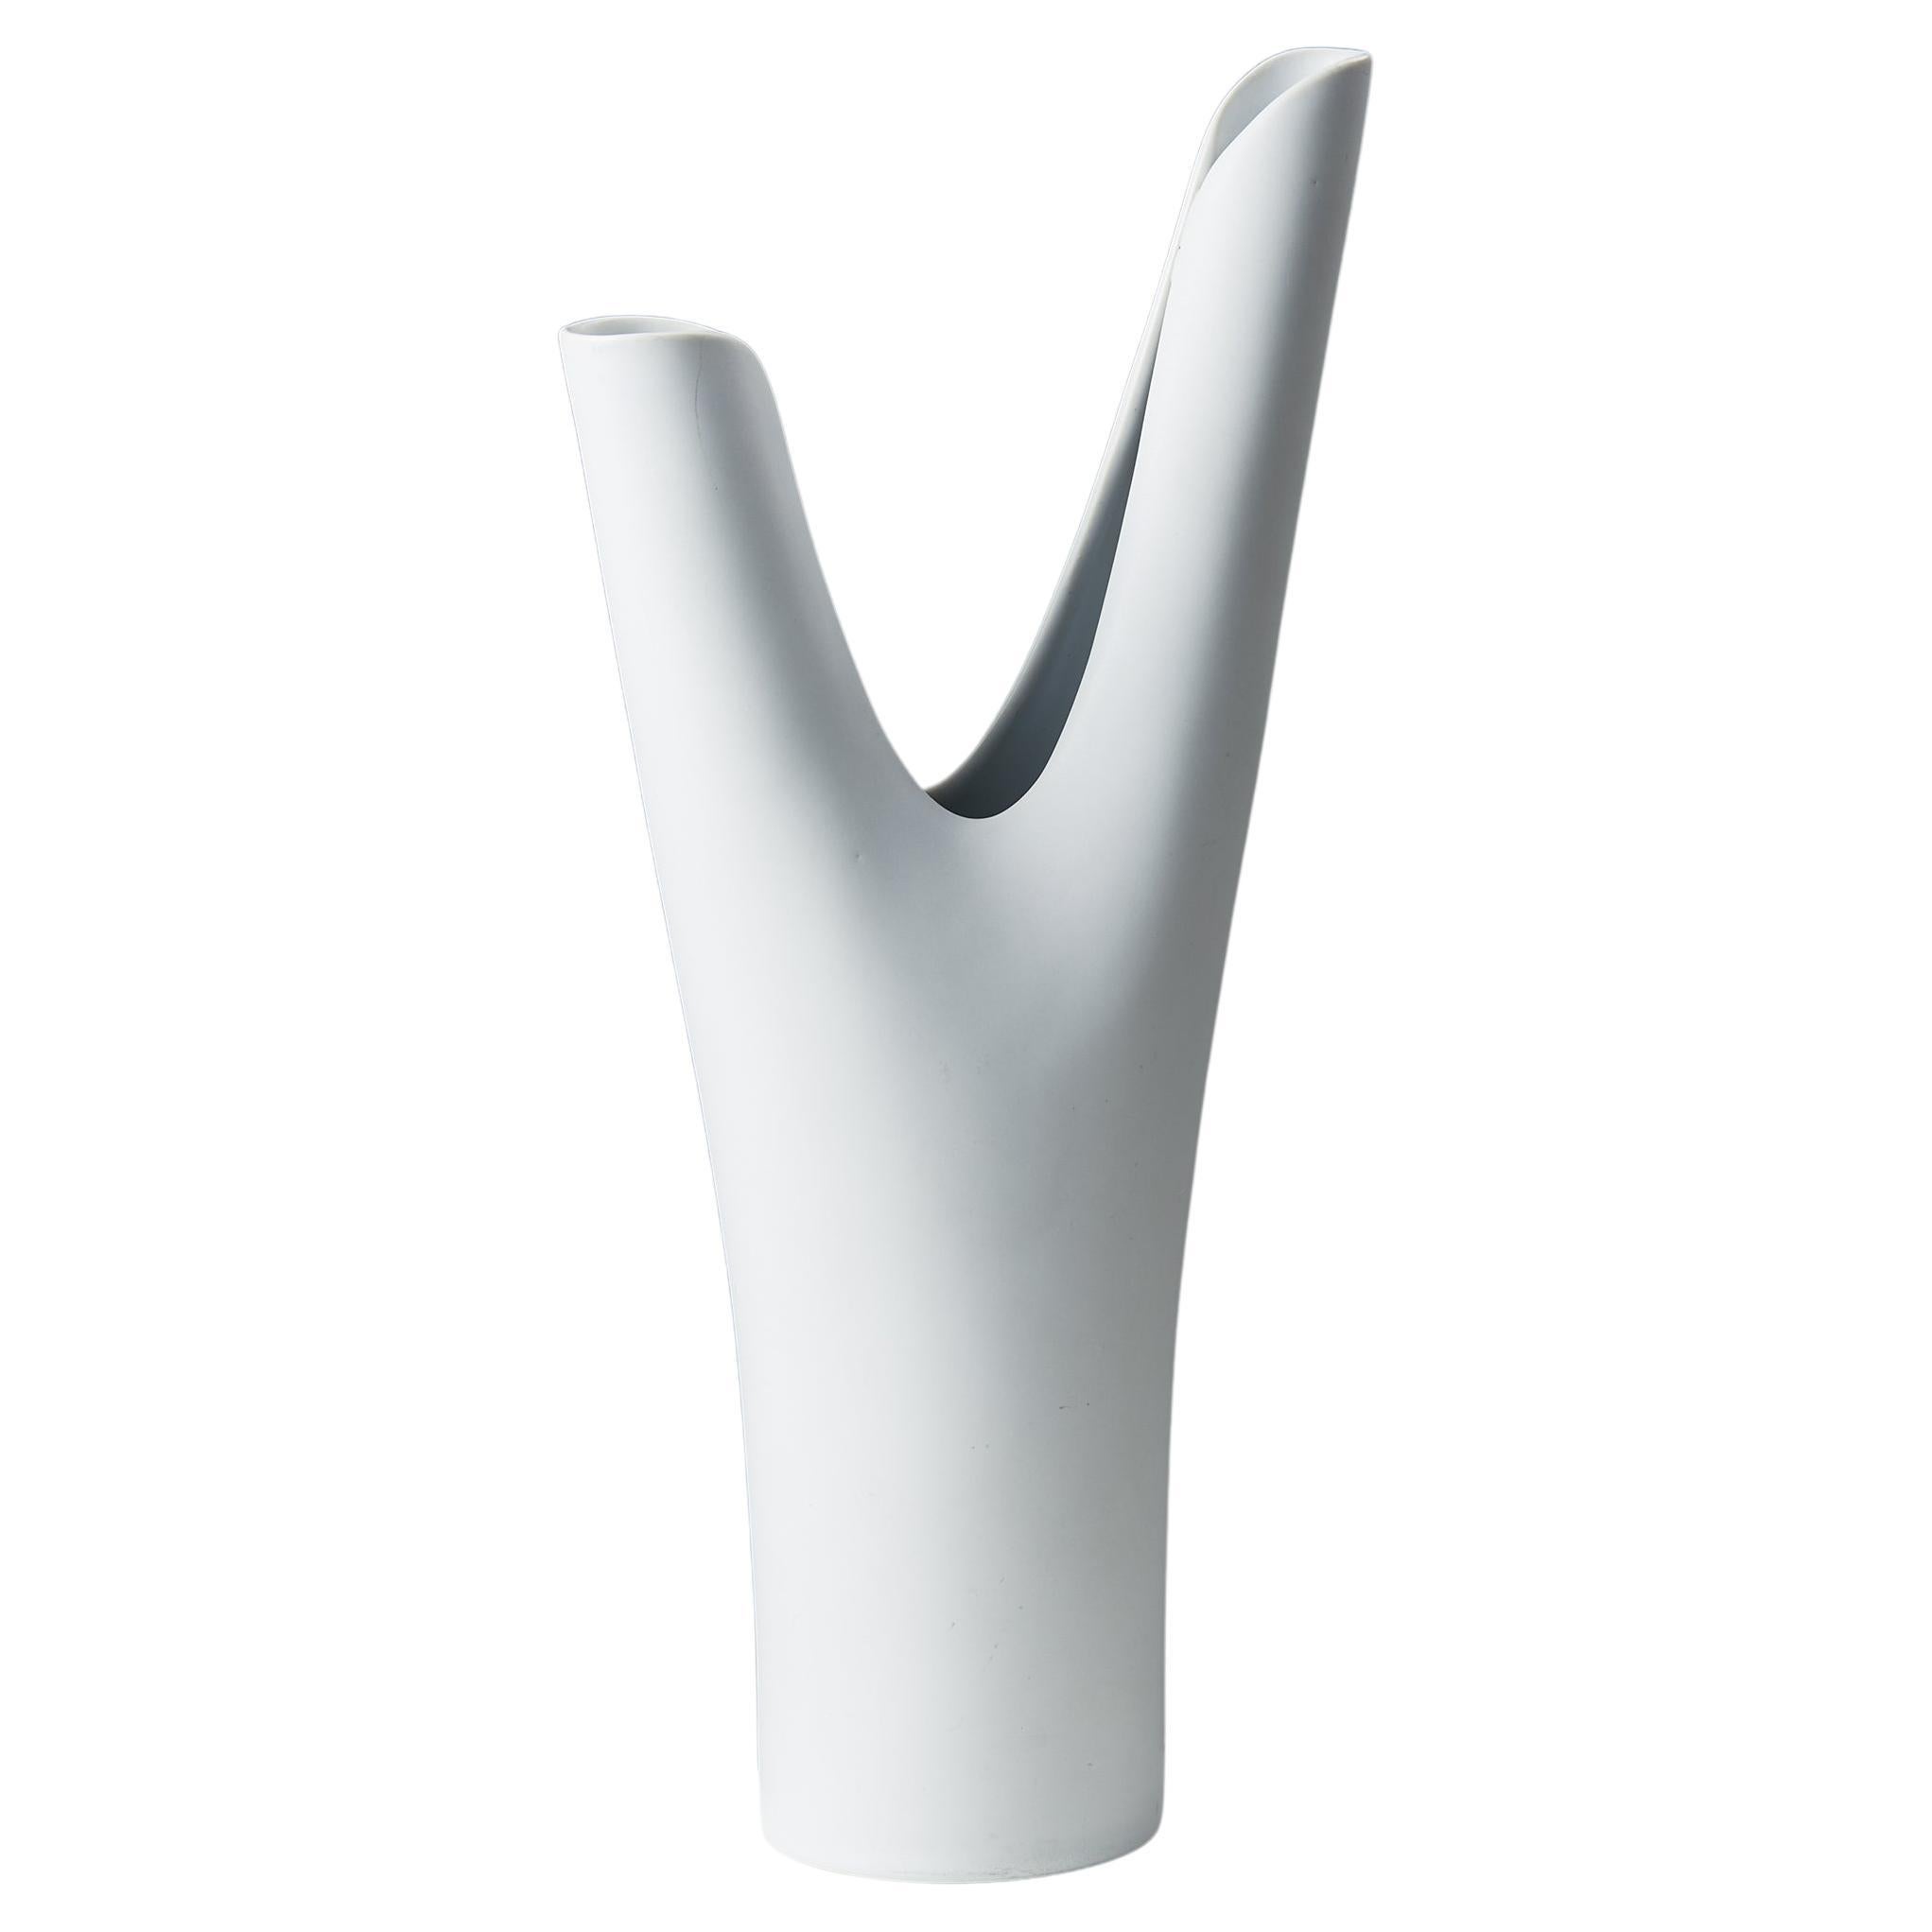 Vase “Veckla” Designed by Stig Lindberg for Gustavsberg, Sweden, 1940s, white